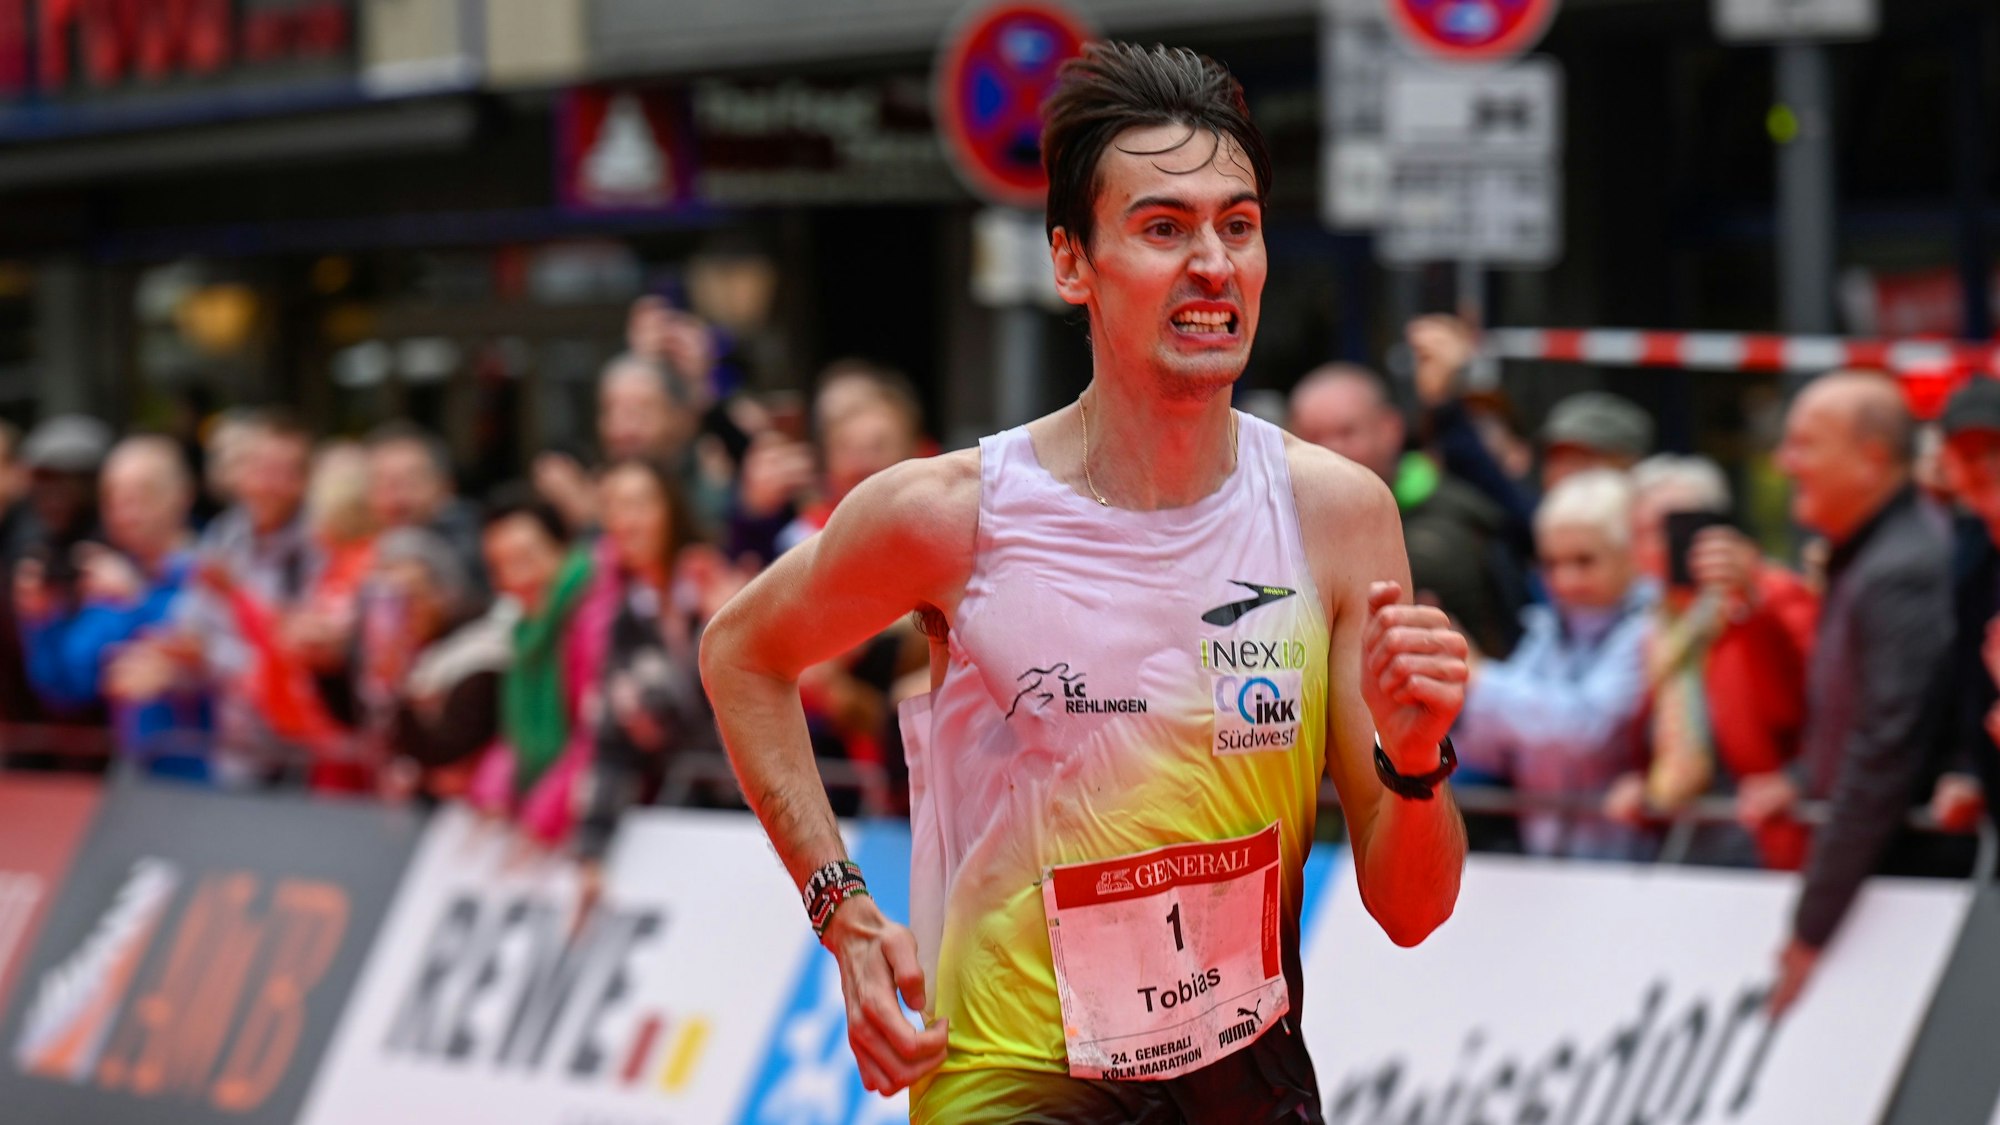 Der Marathon-Sieger 2022: Tobias Blum